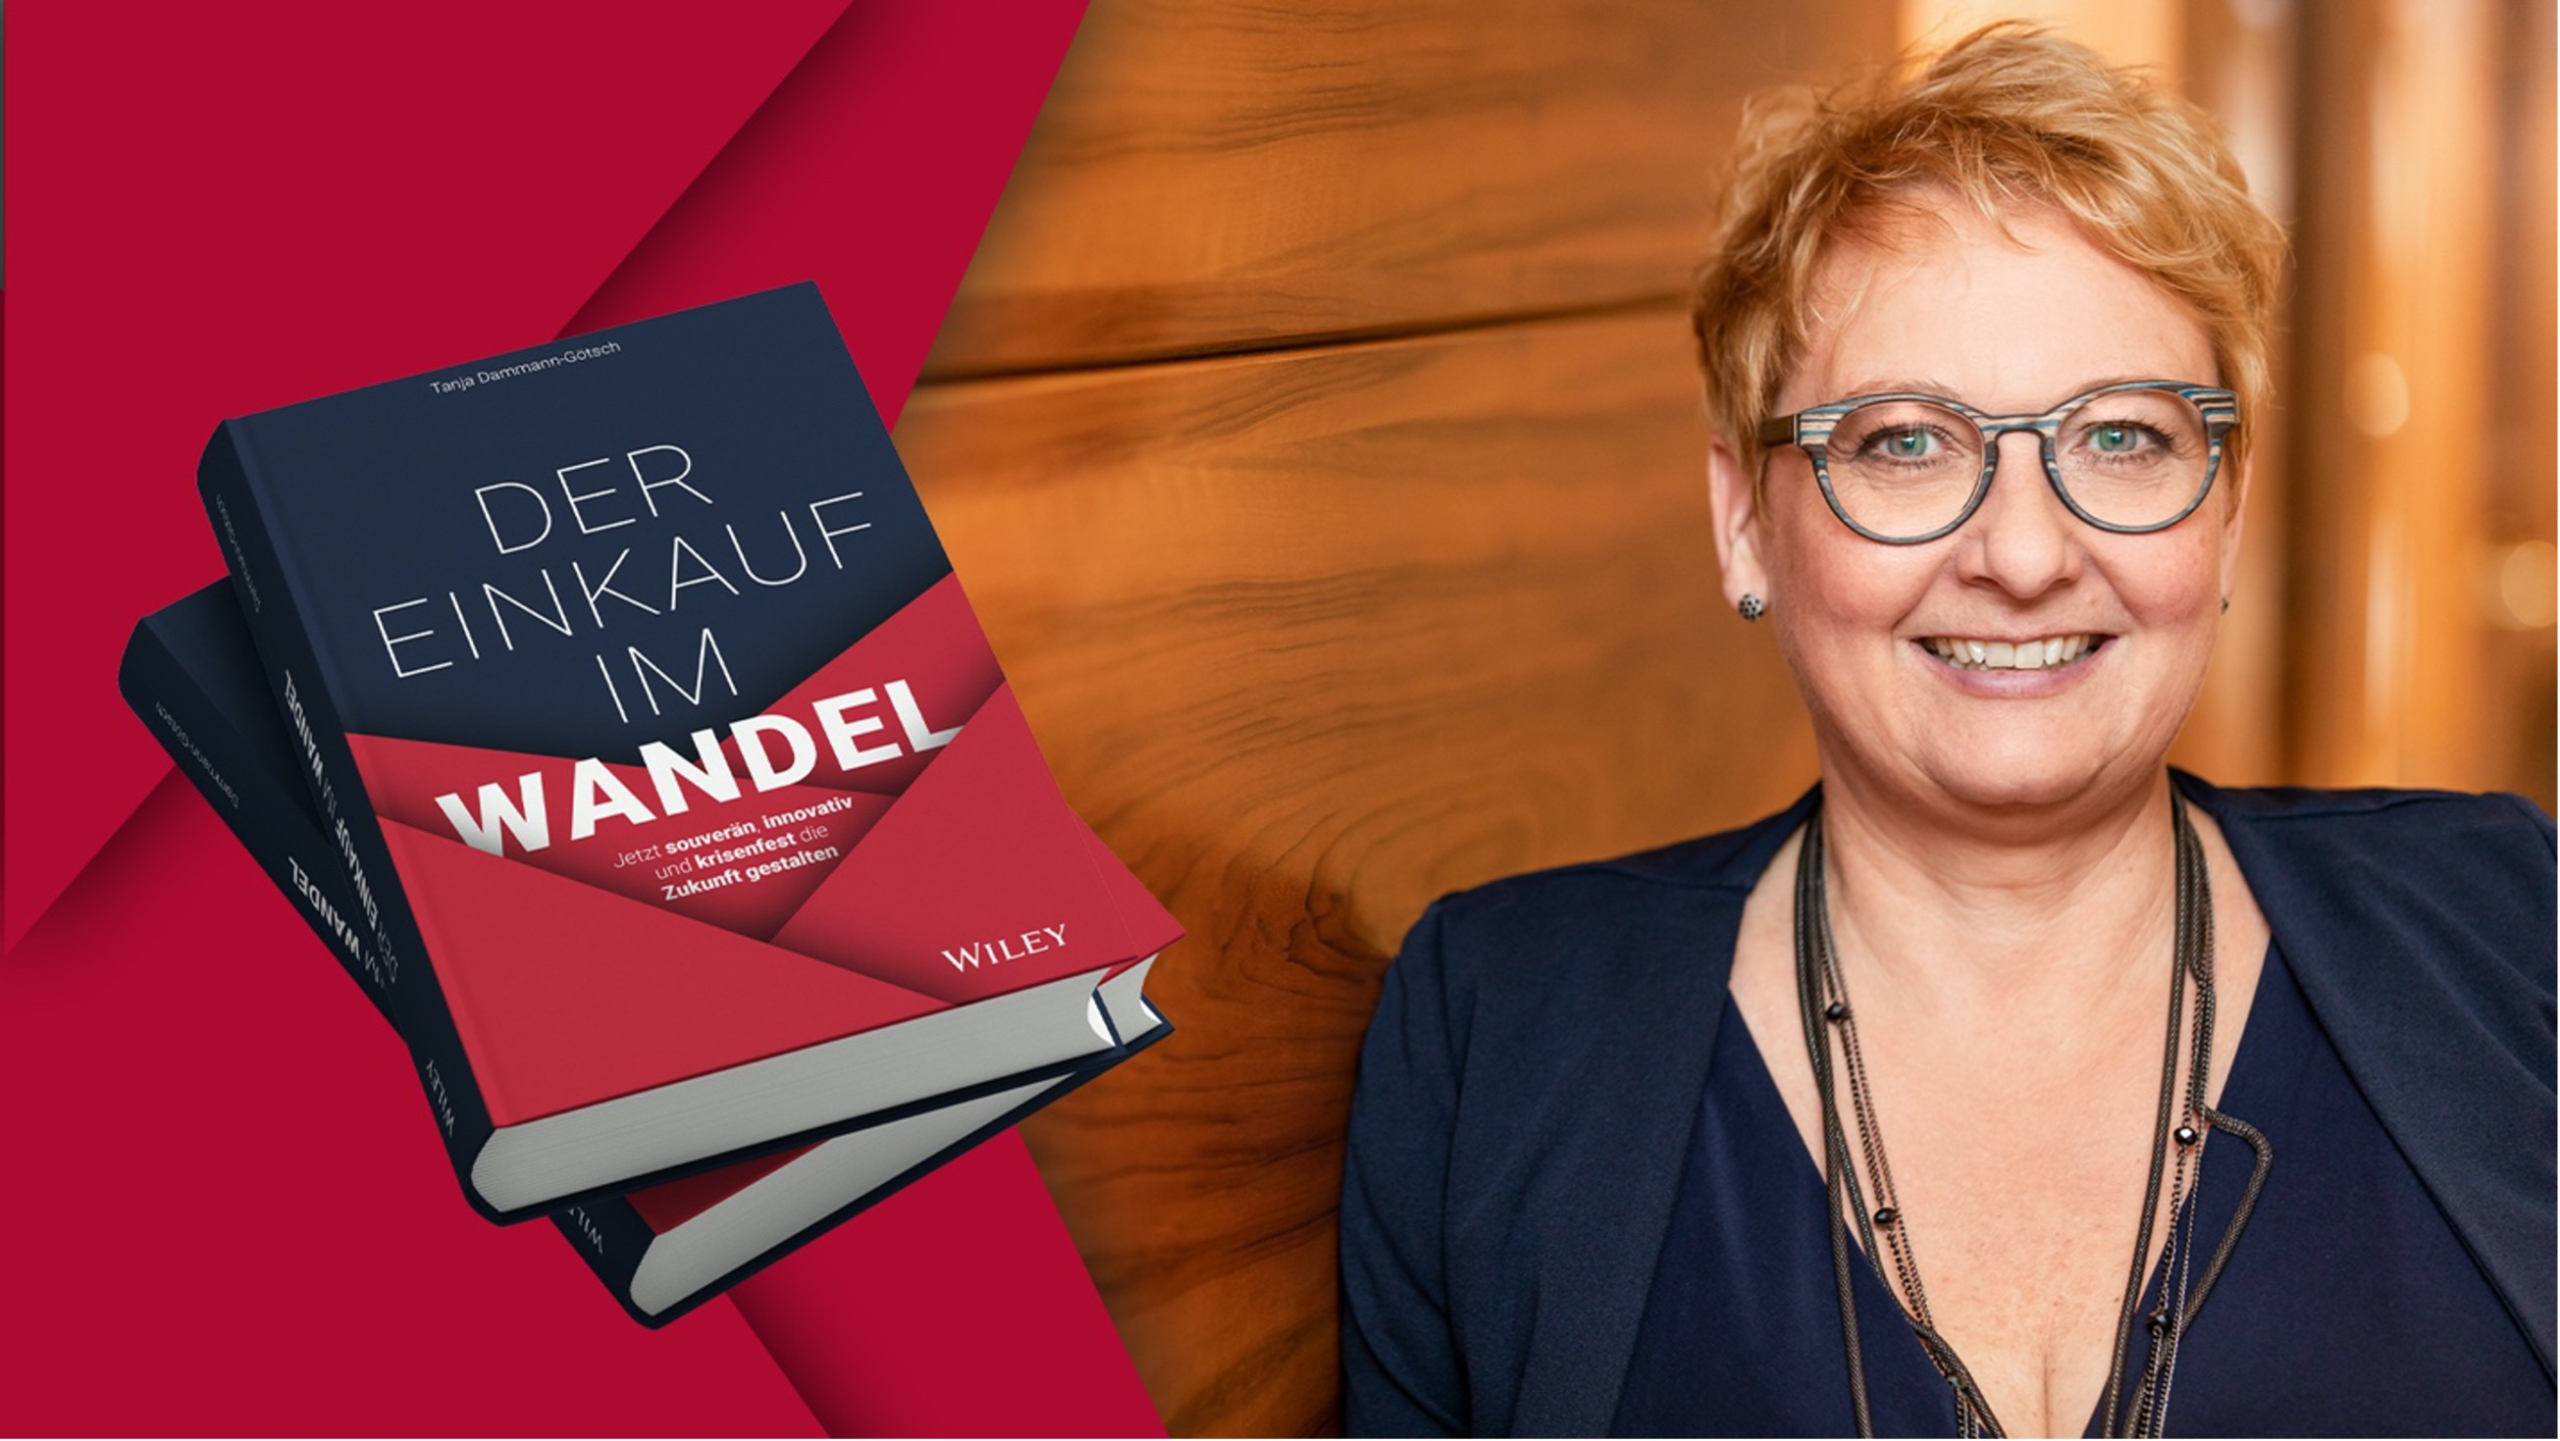 Der Einkauf im Wandel – das neue Buch von Tanja Dammann-Götsch